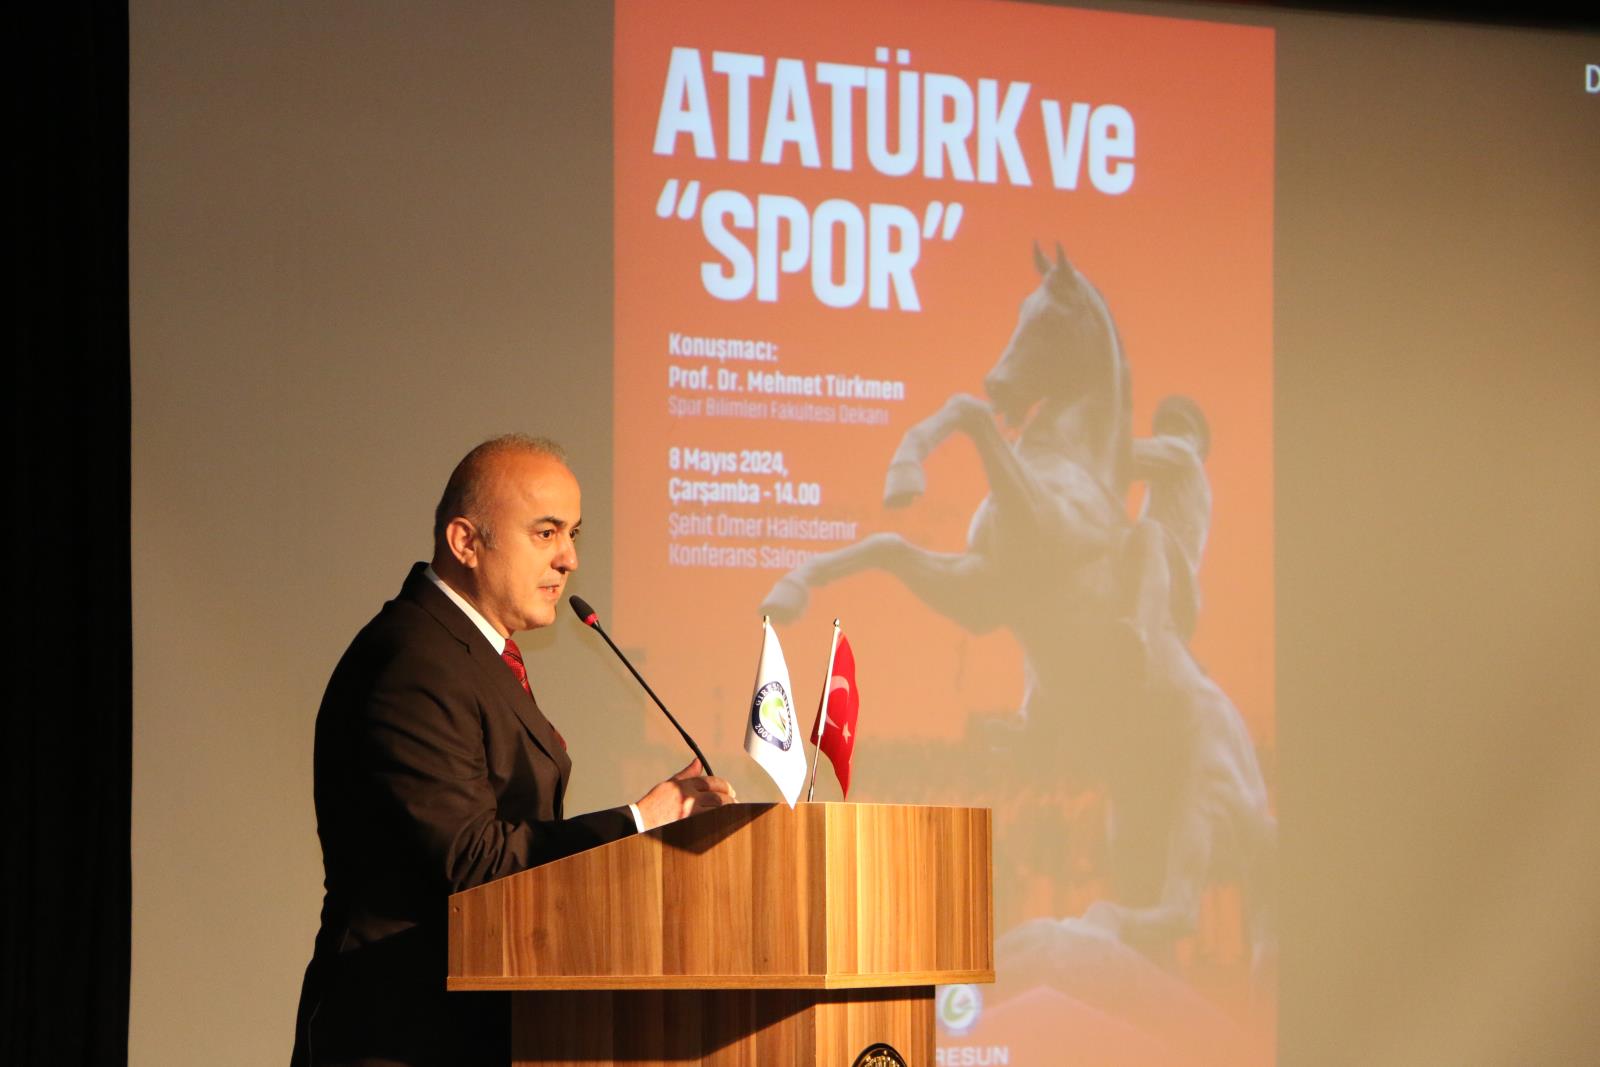 Fen Edebiyat Fakültesi’nin “Atatürk” Temalı Konferansları Başladı…